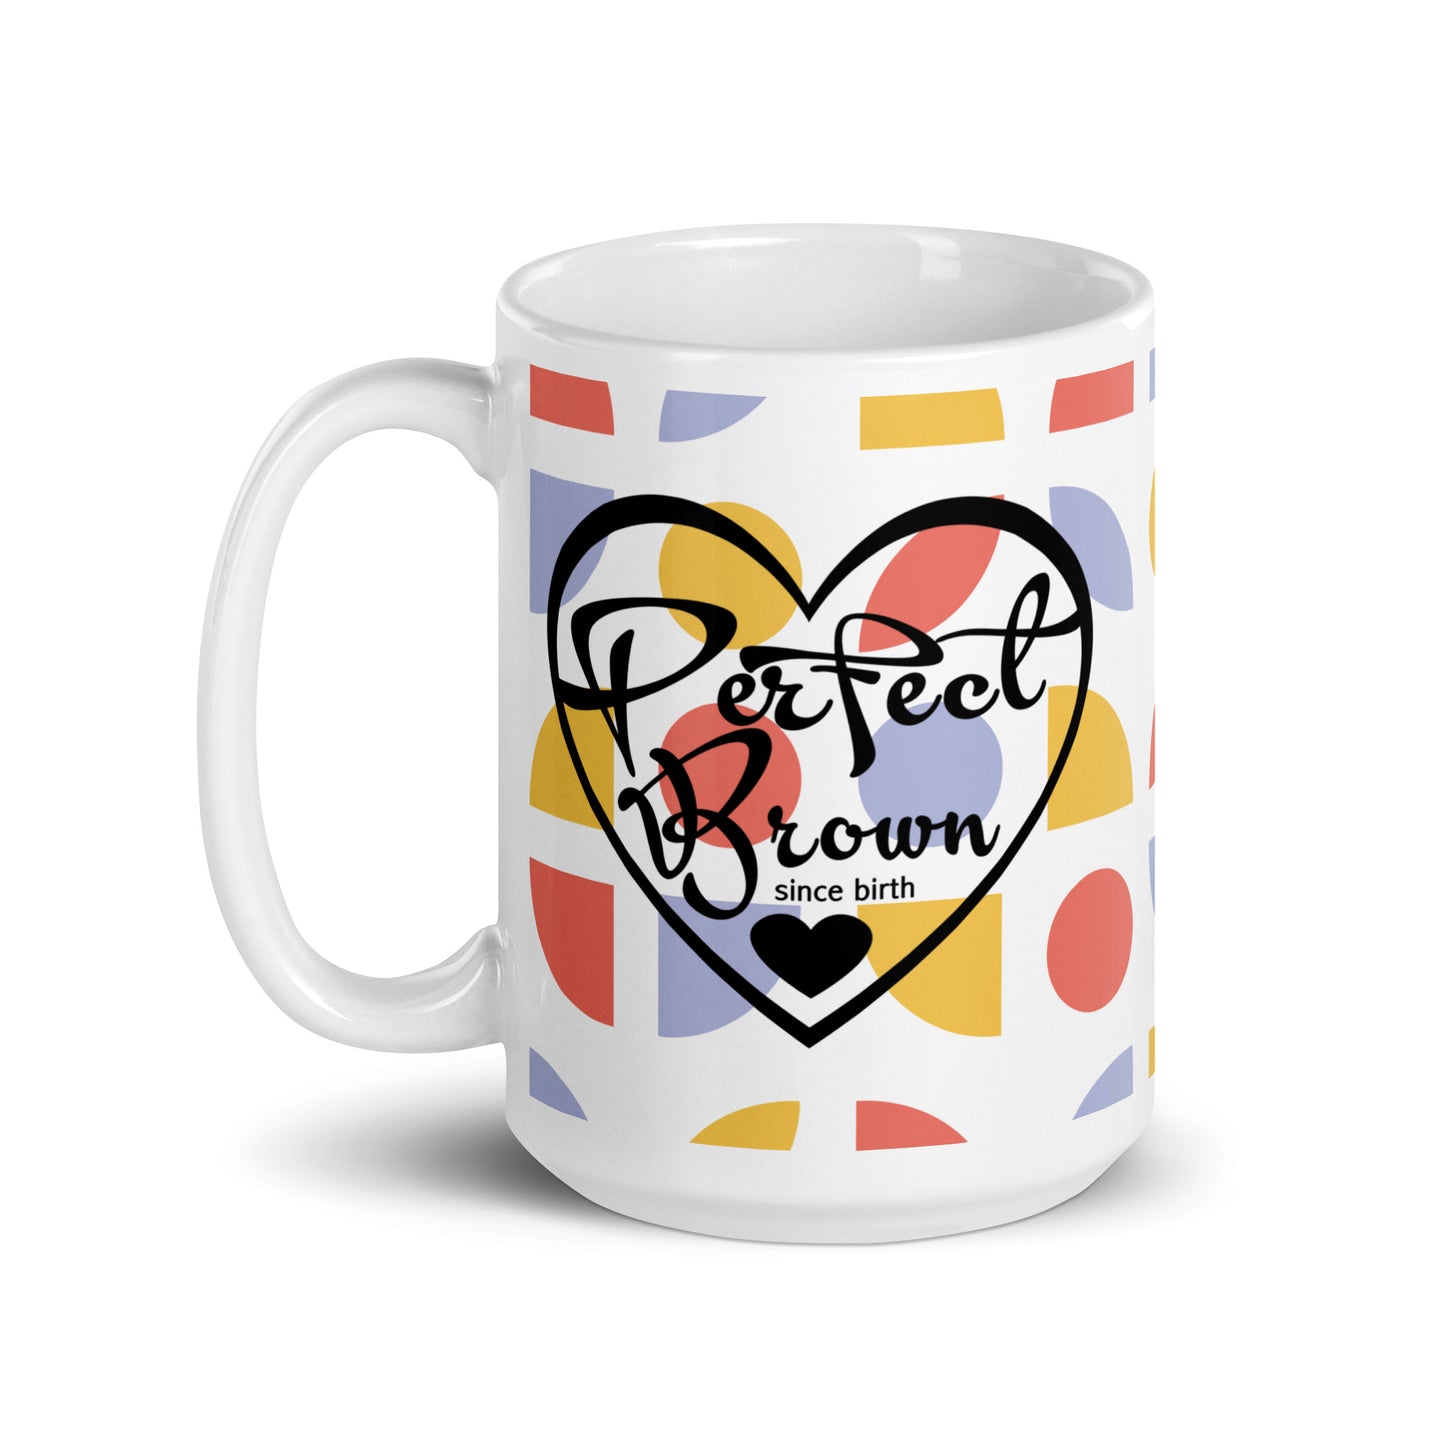 Perfect Brown Mug